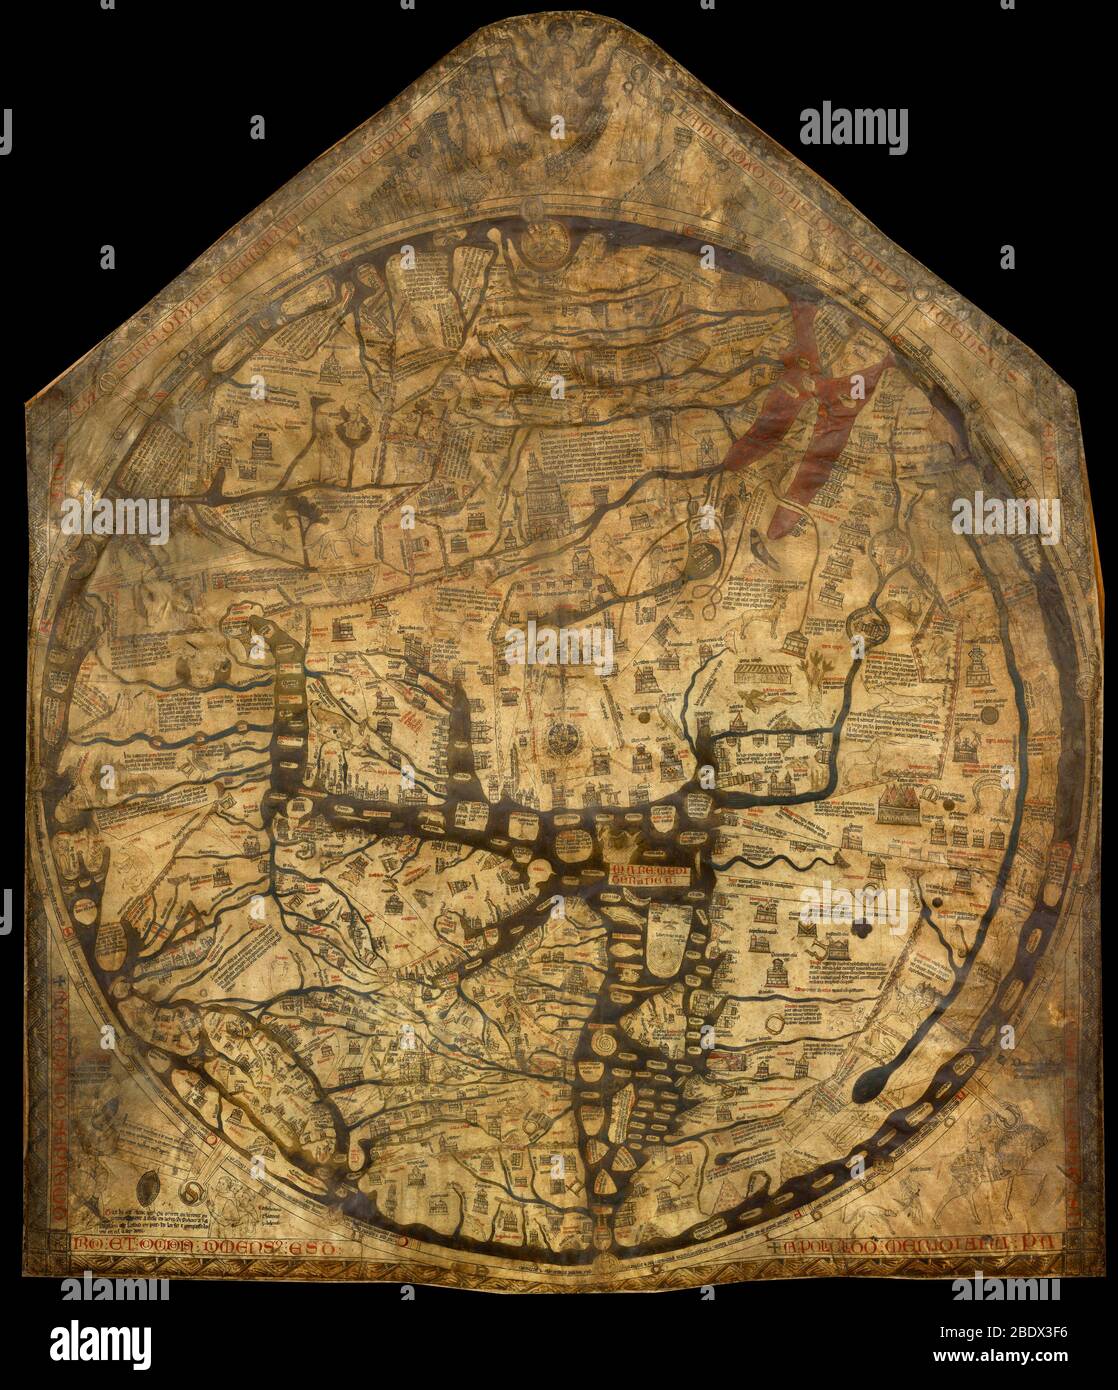 Hereford Mappa Mundi, 1300s Stock Photo